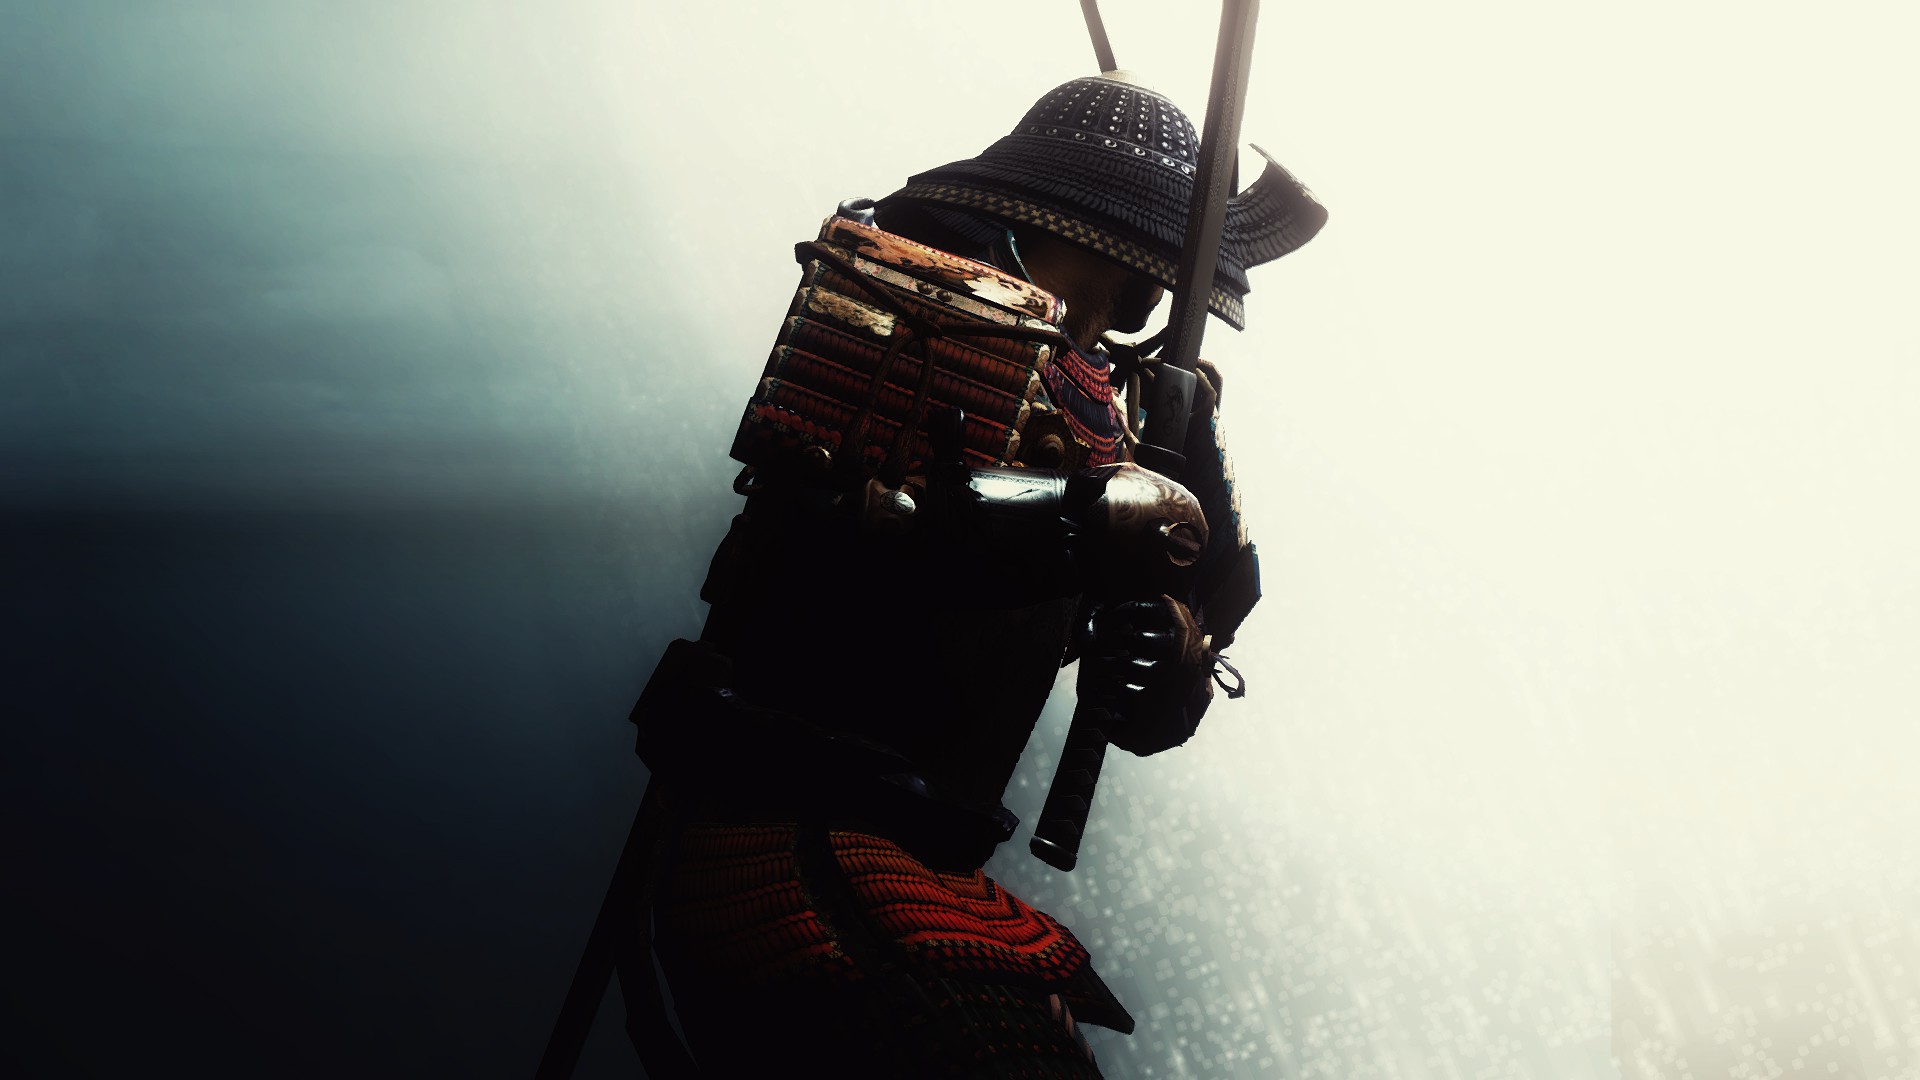 Samurai Armor Wallpapers Mobile : Other Wallpaper - Kokean.com